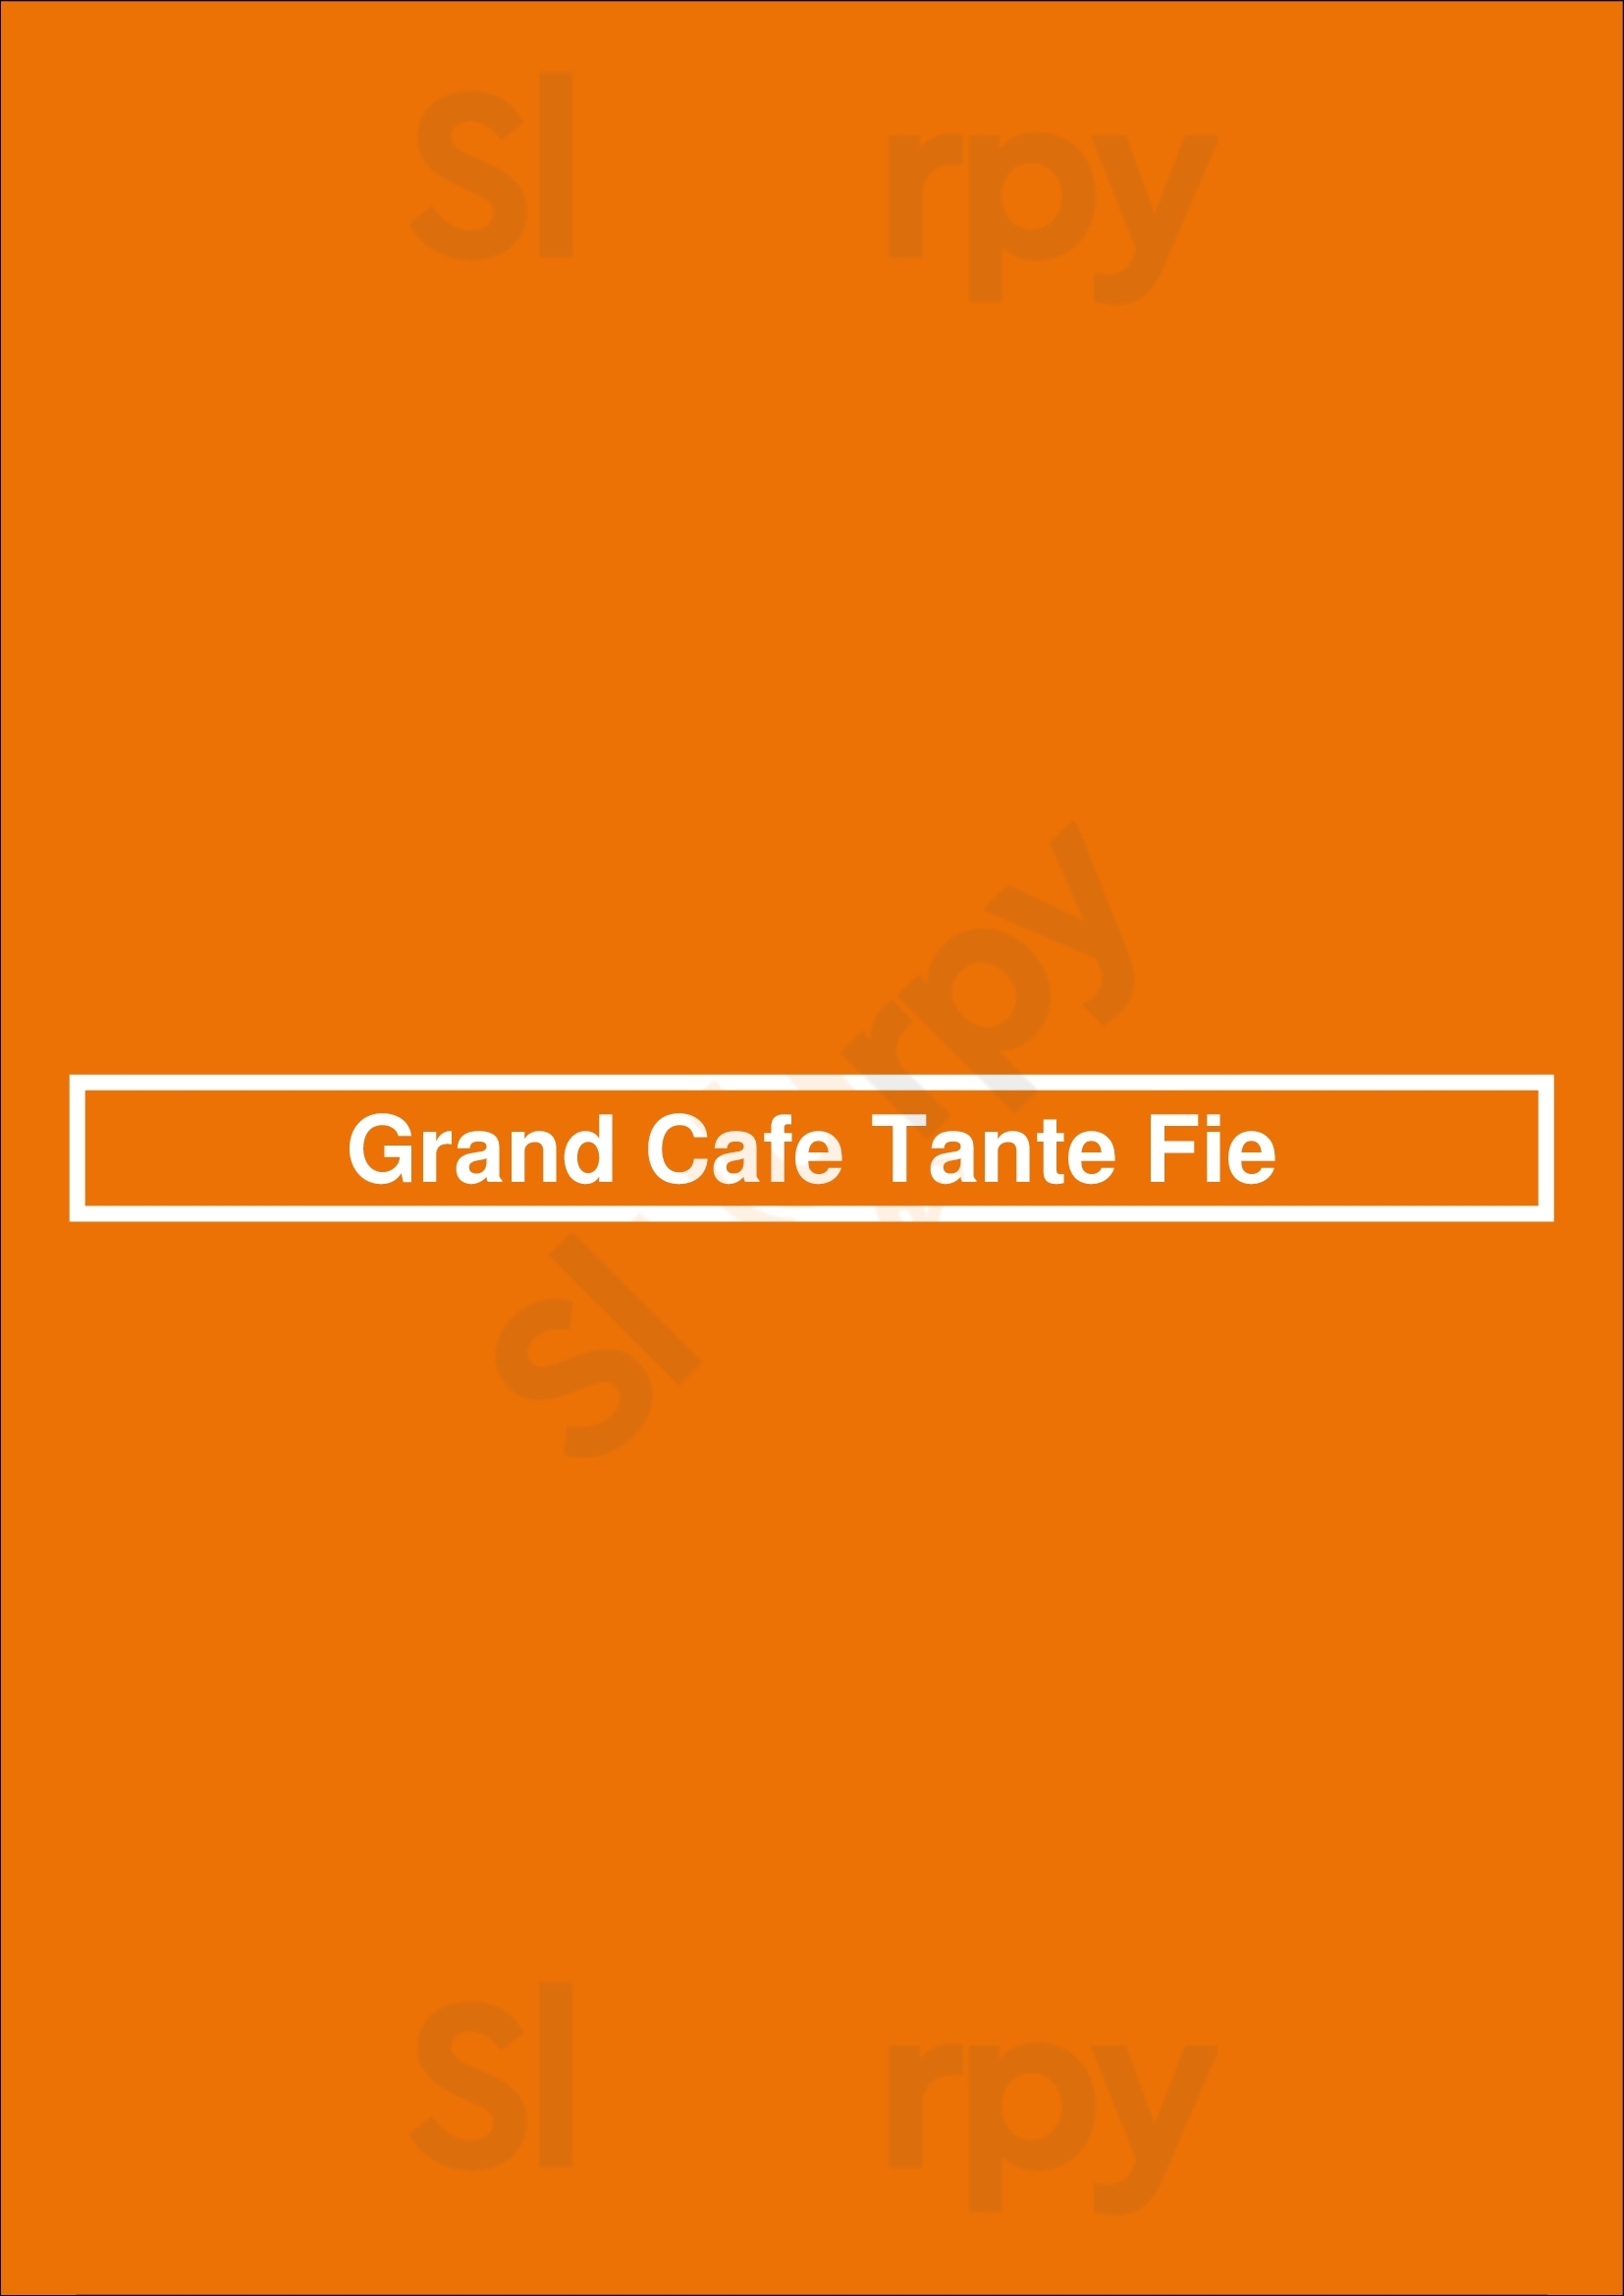 Grand Cafe Tante Fie Utrecht Menu - 1